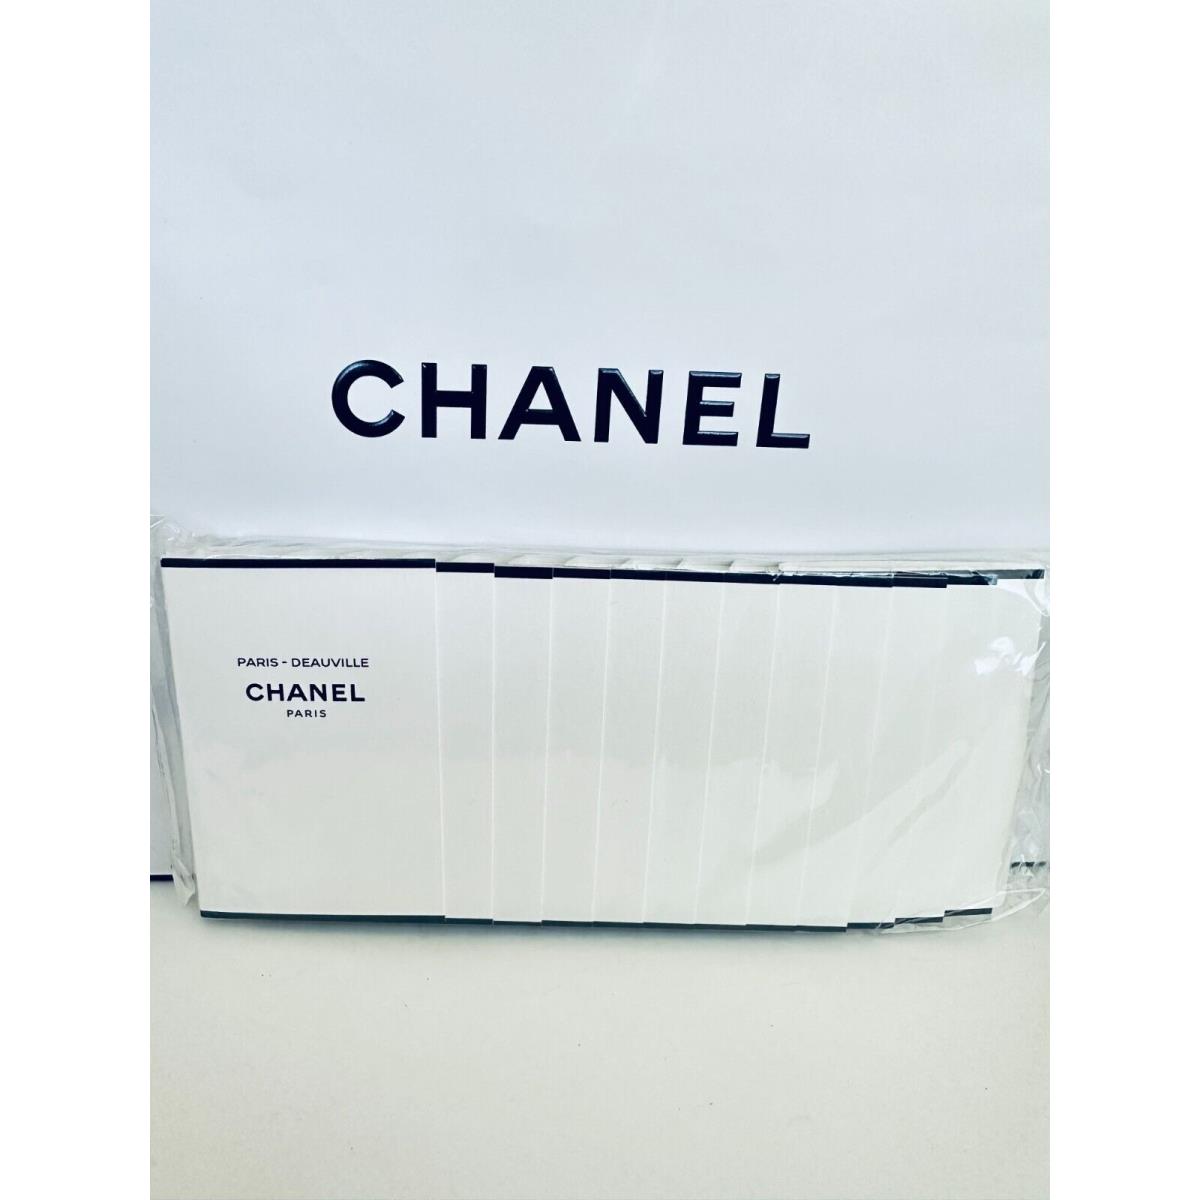 Chanel Les Eaux de Chanel Paris Sample Size 1.5ml-12pcs/pack Choose Your Scent Chanel Paris Deauville